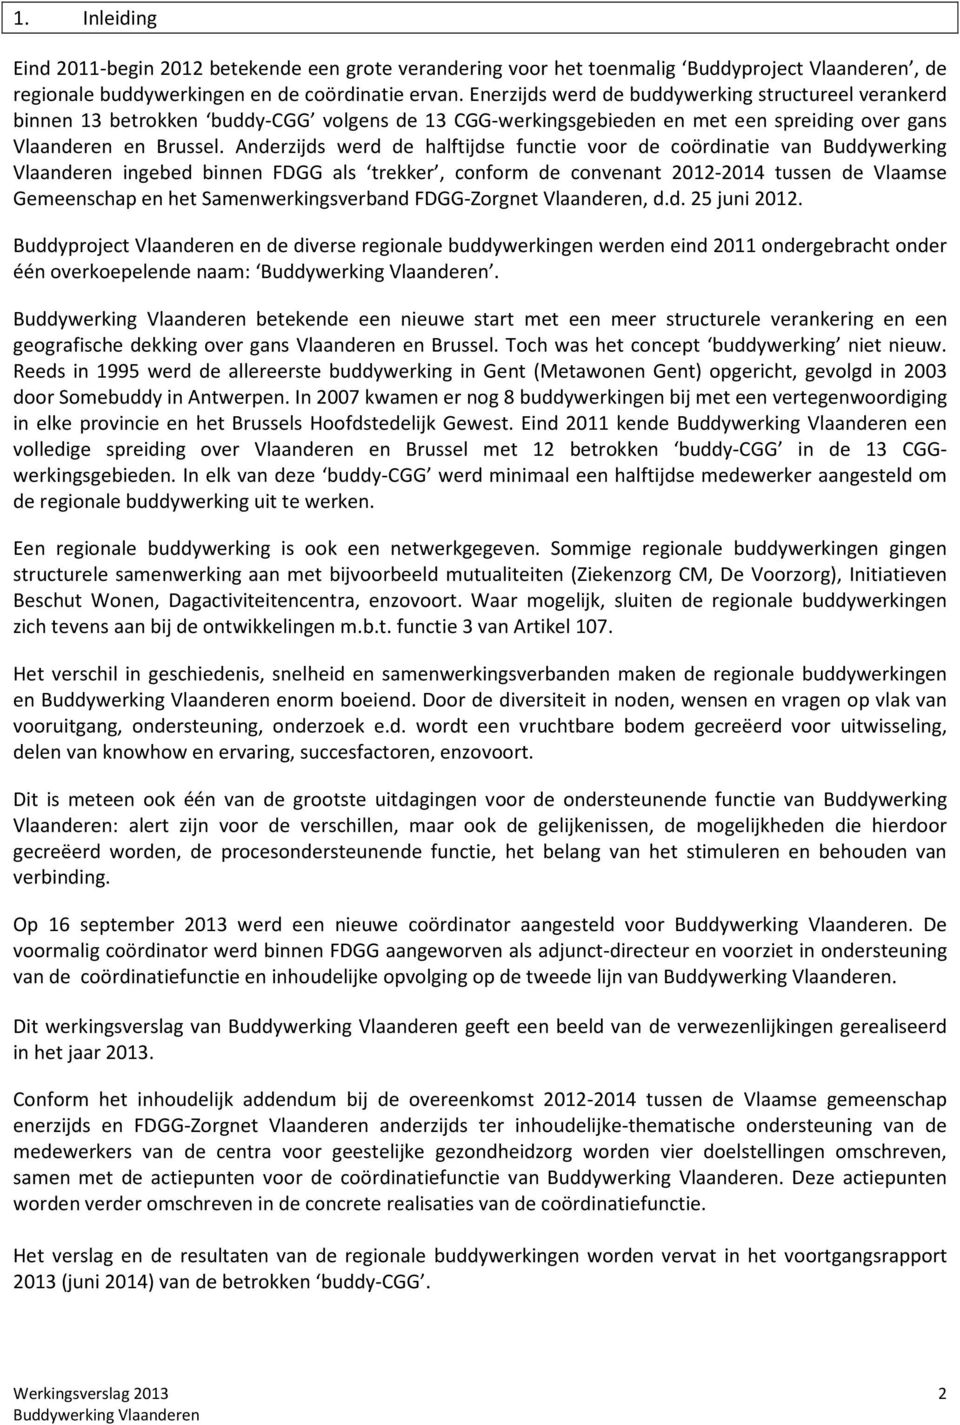 Anderzijds werd de halftijdse functie voor de coördinatie van Buddywerking Vlaanderen ingebed binnen FDGG als trekker, conform de convenant 2012-2014 tussen de Vlaamse Gemeenschap en het